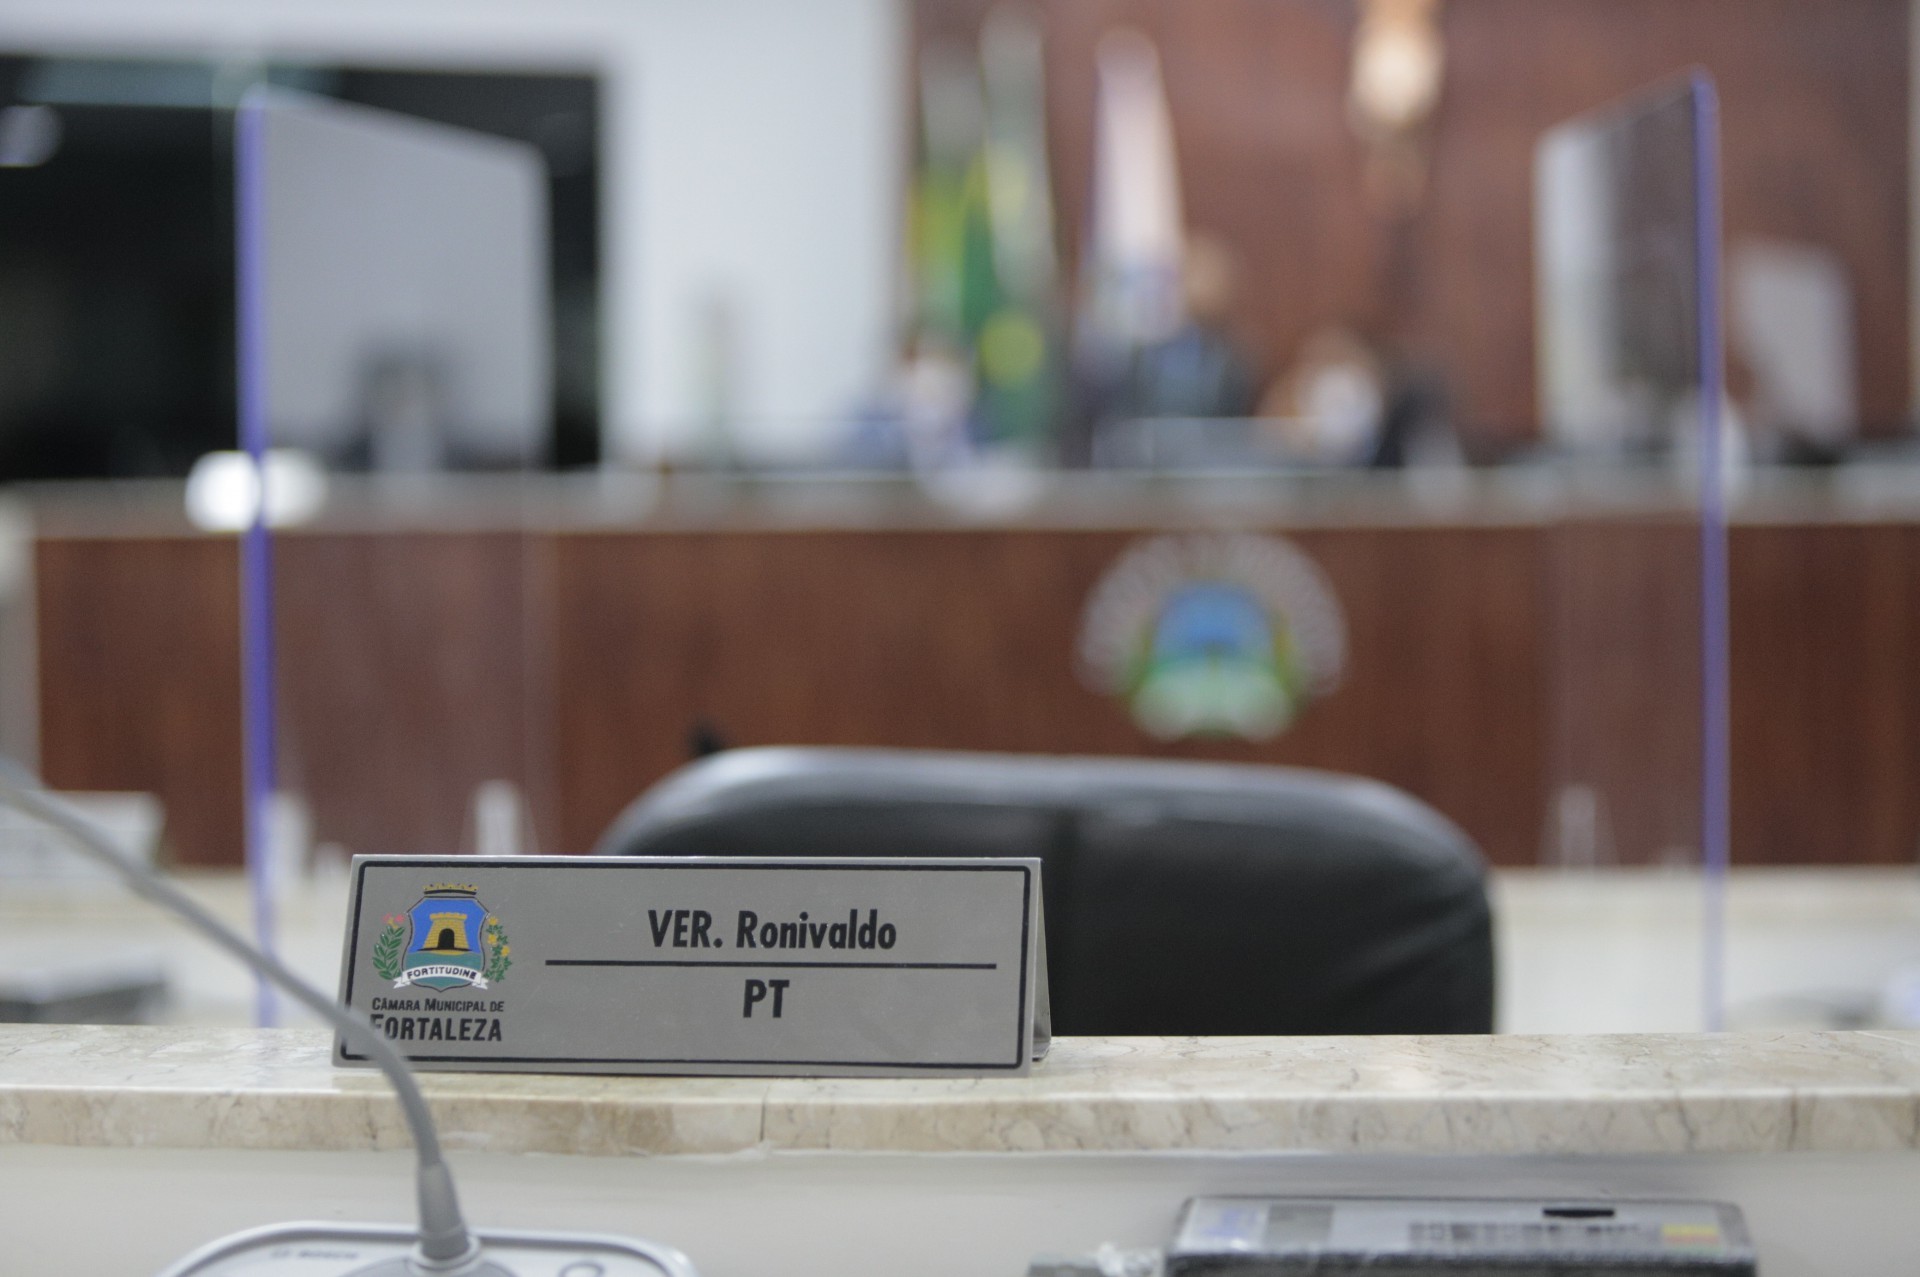 ￼CÂMARA de Fortaleza realizou ontem primeira sessão plenária após prisão de Ronivaldo Maia (Foto: FCO FONTENELE)